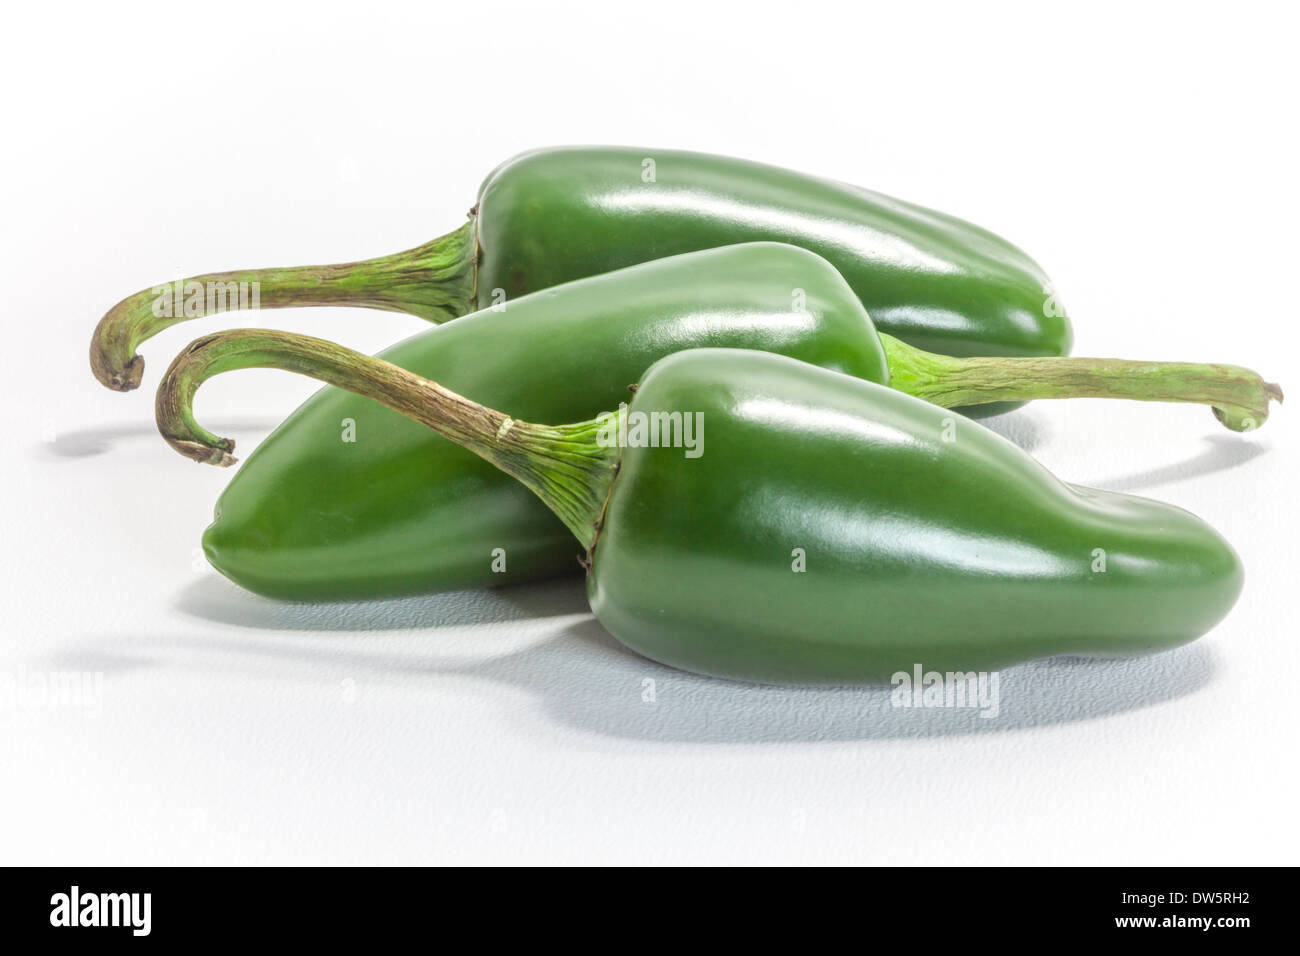 Tres Chiles Jalapeño caliente verde, el C. annuum cultivar de la familia del pimiento. Nombrado después de la ciudad de Jalapa en santa cruz, México Foto de stock